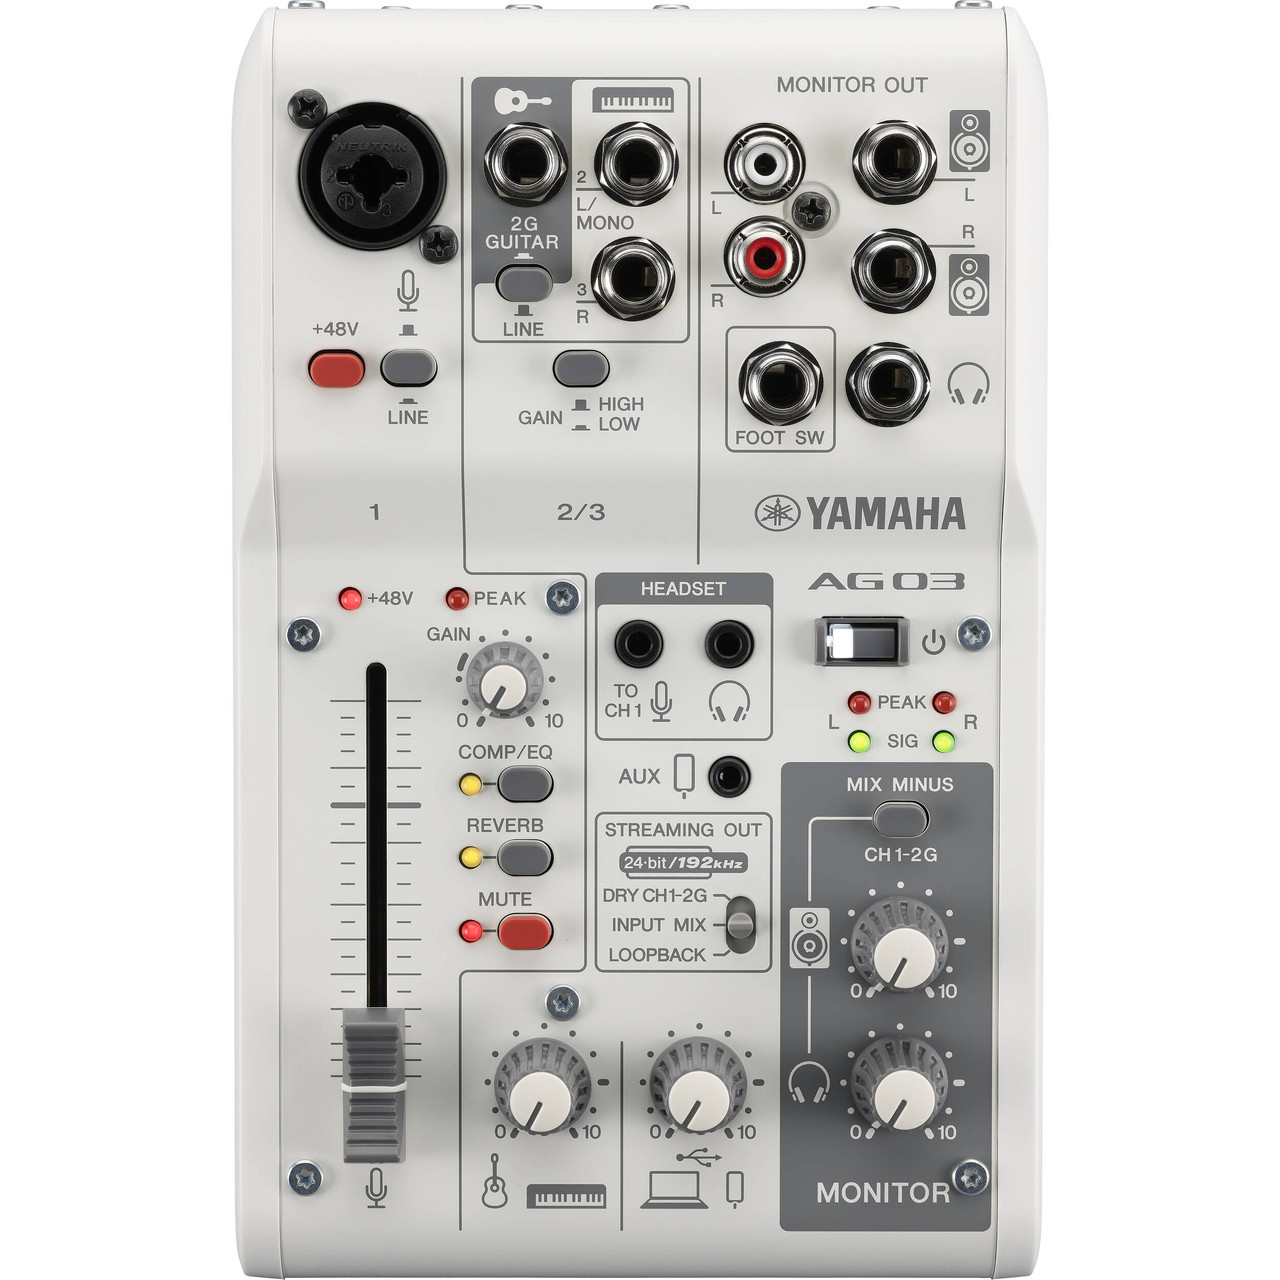 Yamaha AG03 MKII Mixer & Audio Interface | FrontEndAudio.com